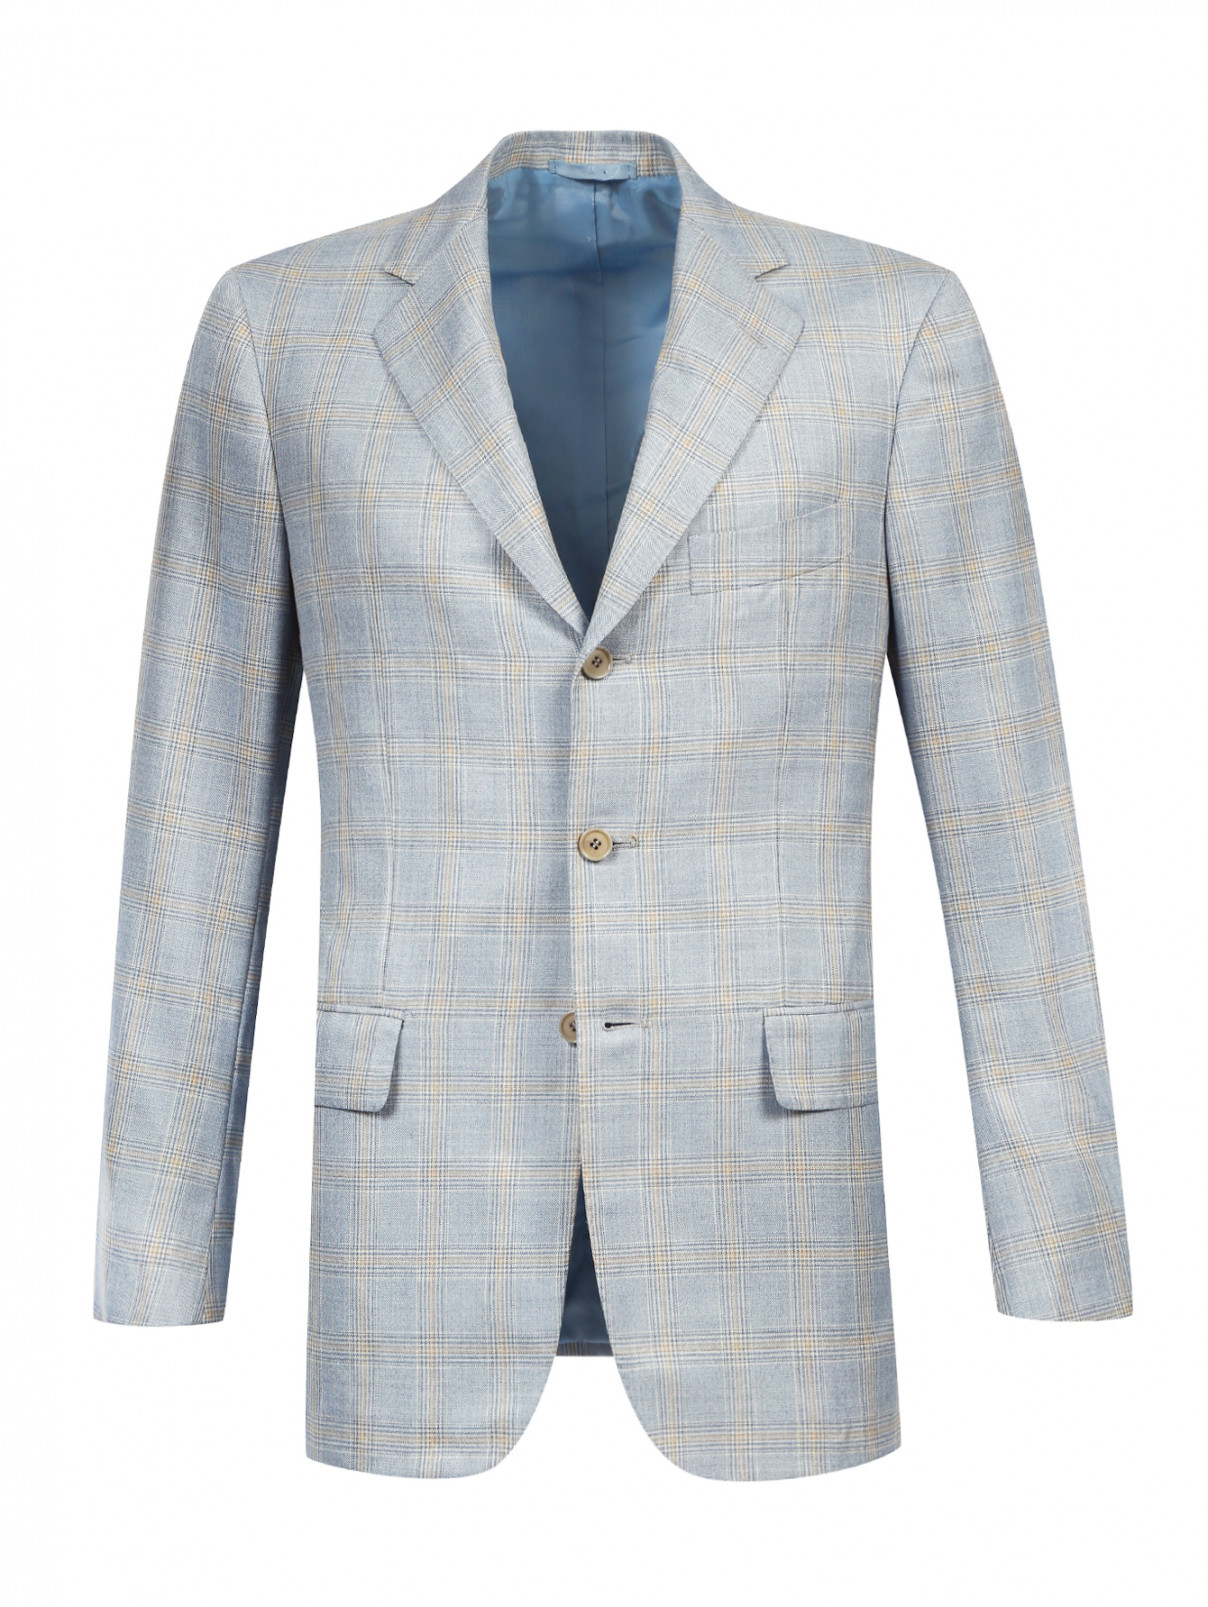 Пиджак из шерсти и шелка с узором "клетка" Luciano Barbera  –  Общий вид  – Цвет:  Синий